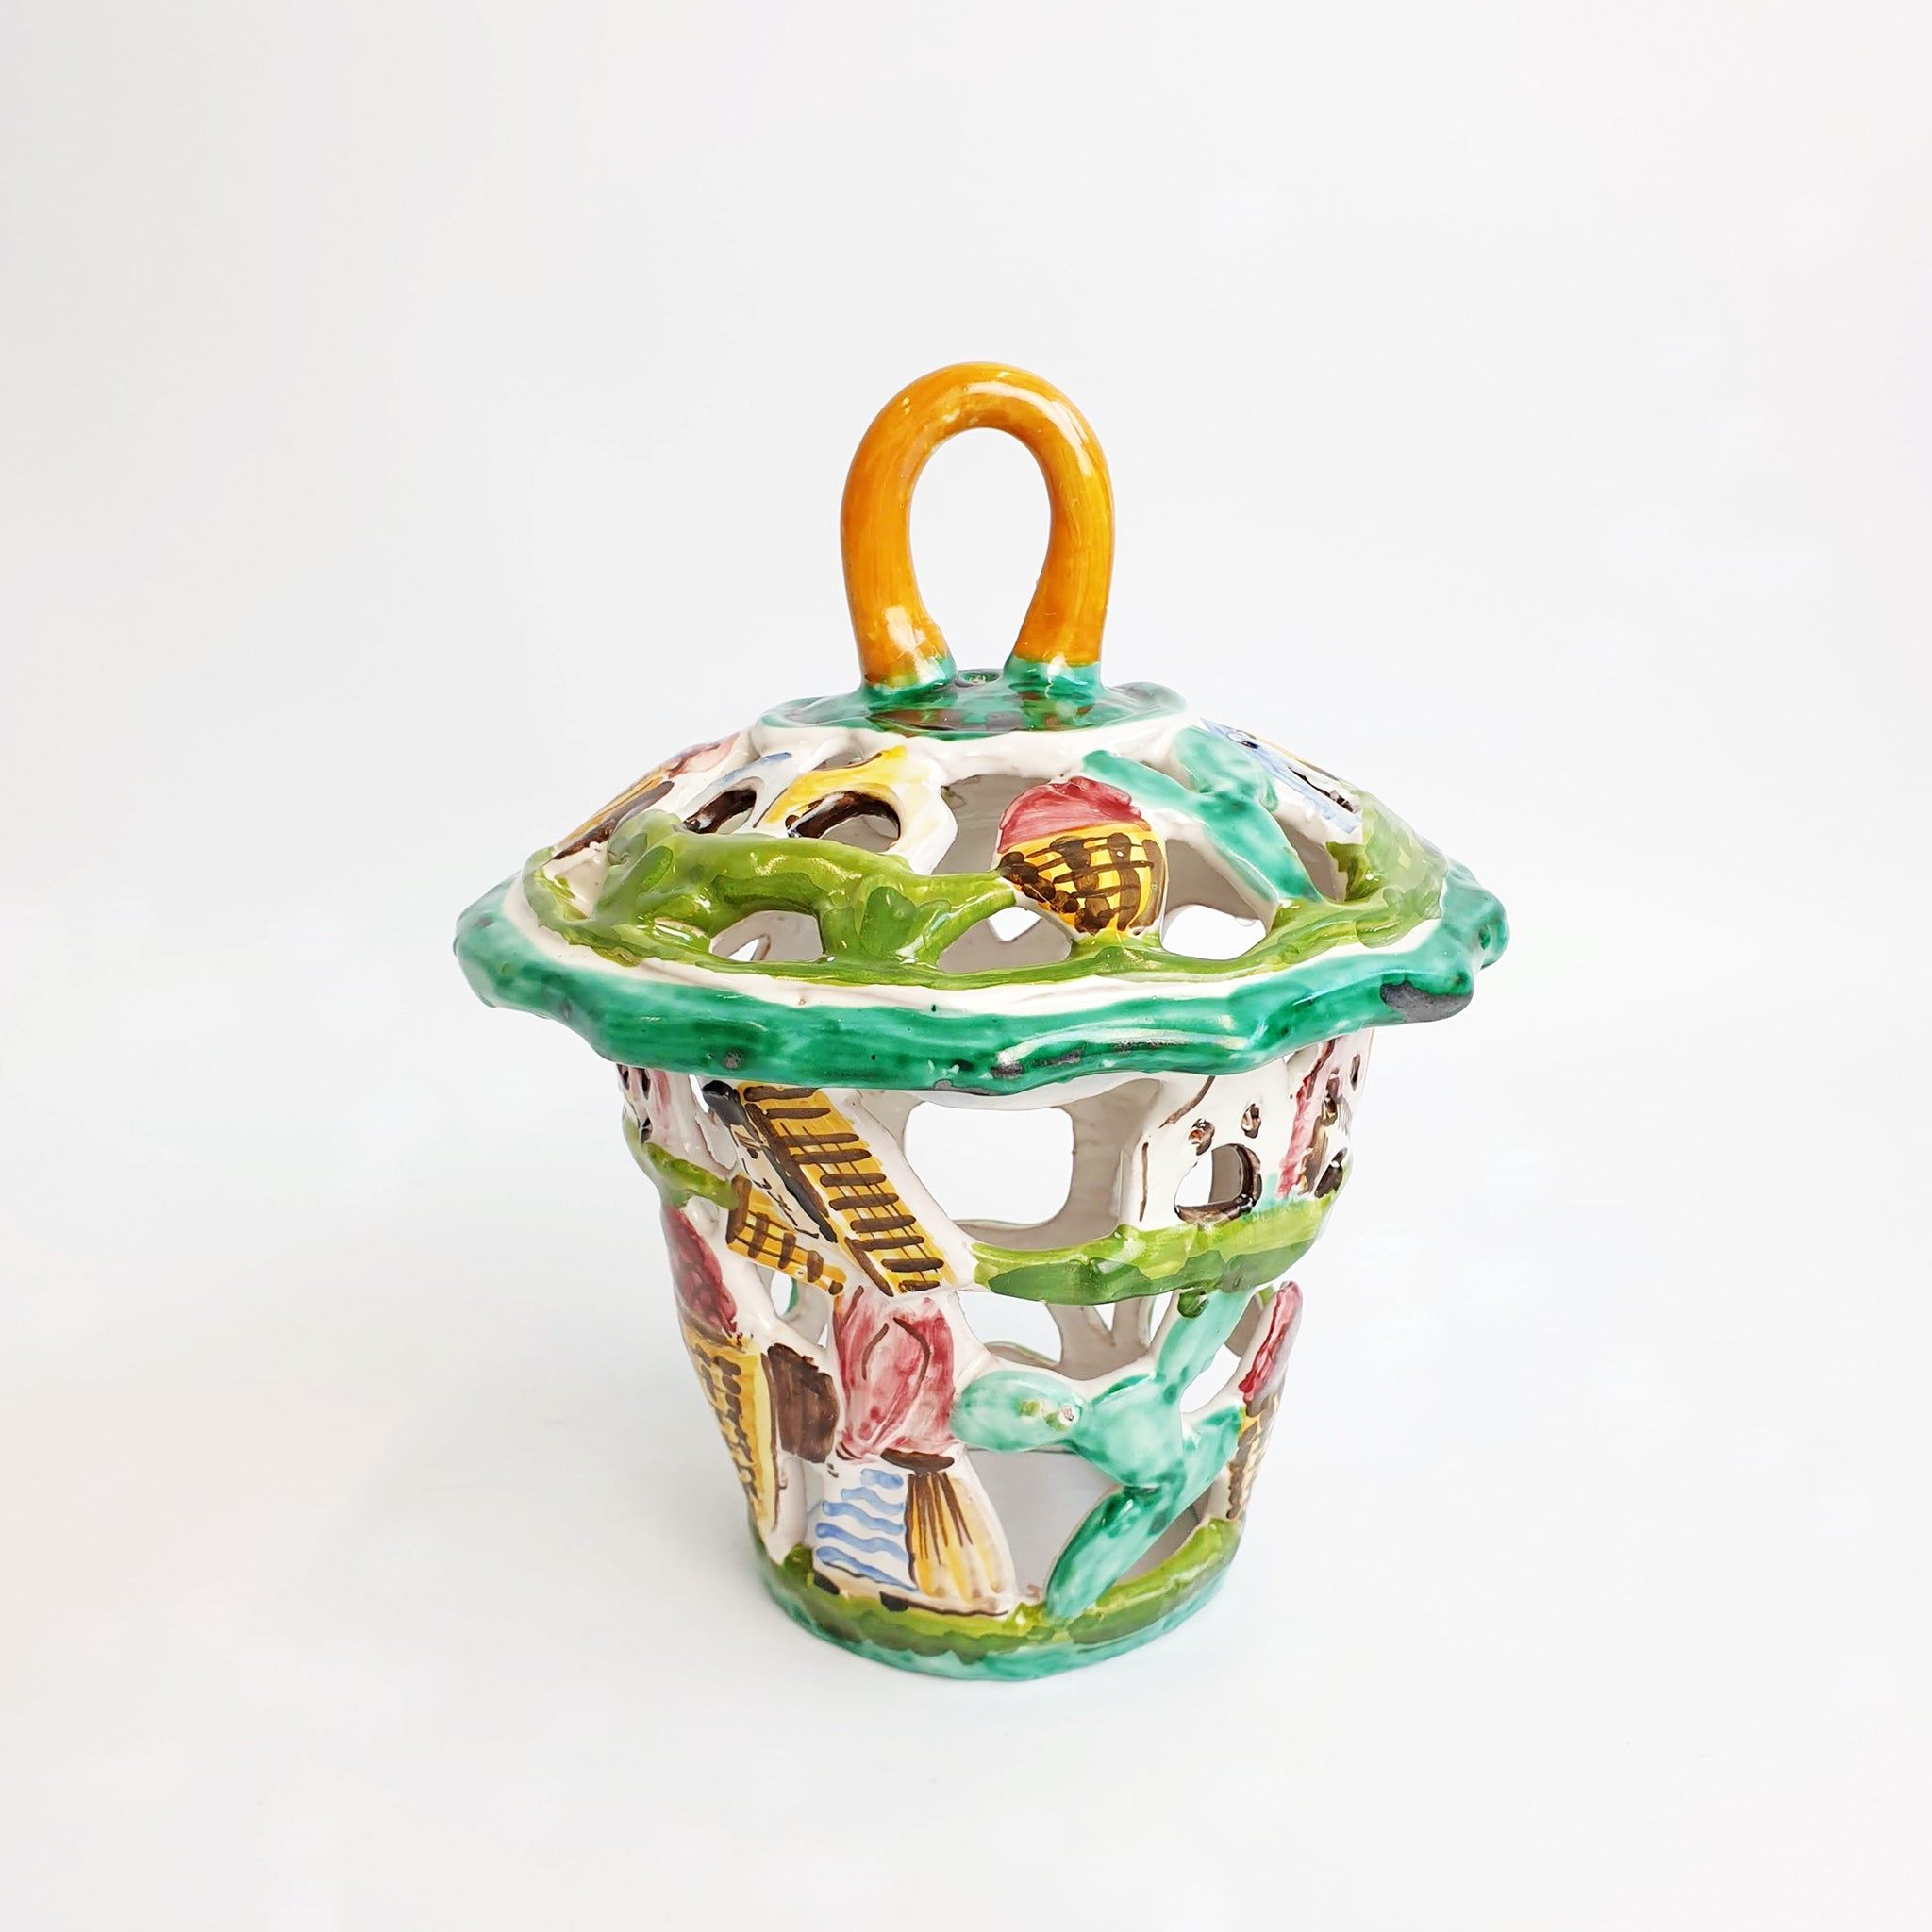 Vintage Italian ceramic lantern by A.C.A Amalfi